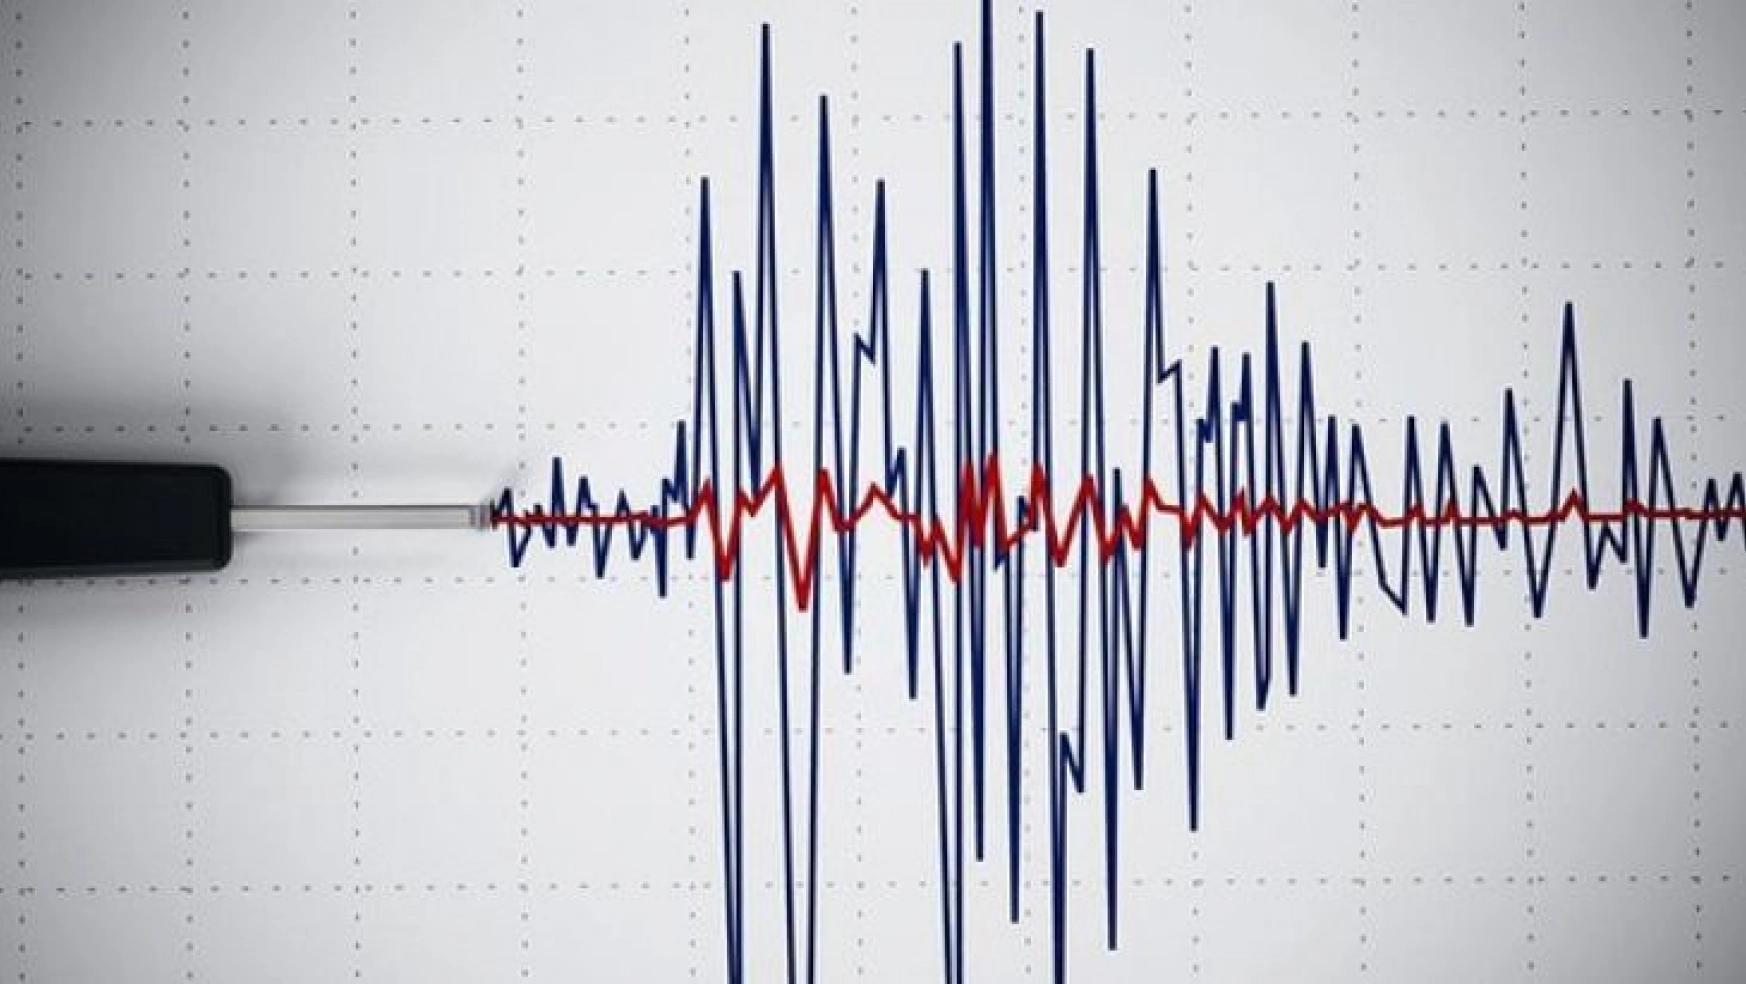 Hekimhan'da 3,2 büyüklüğünde deprem